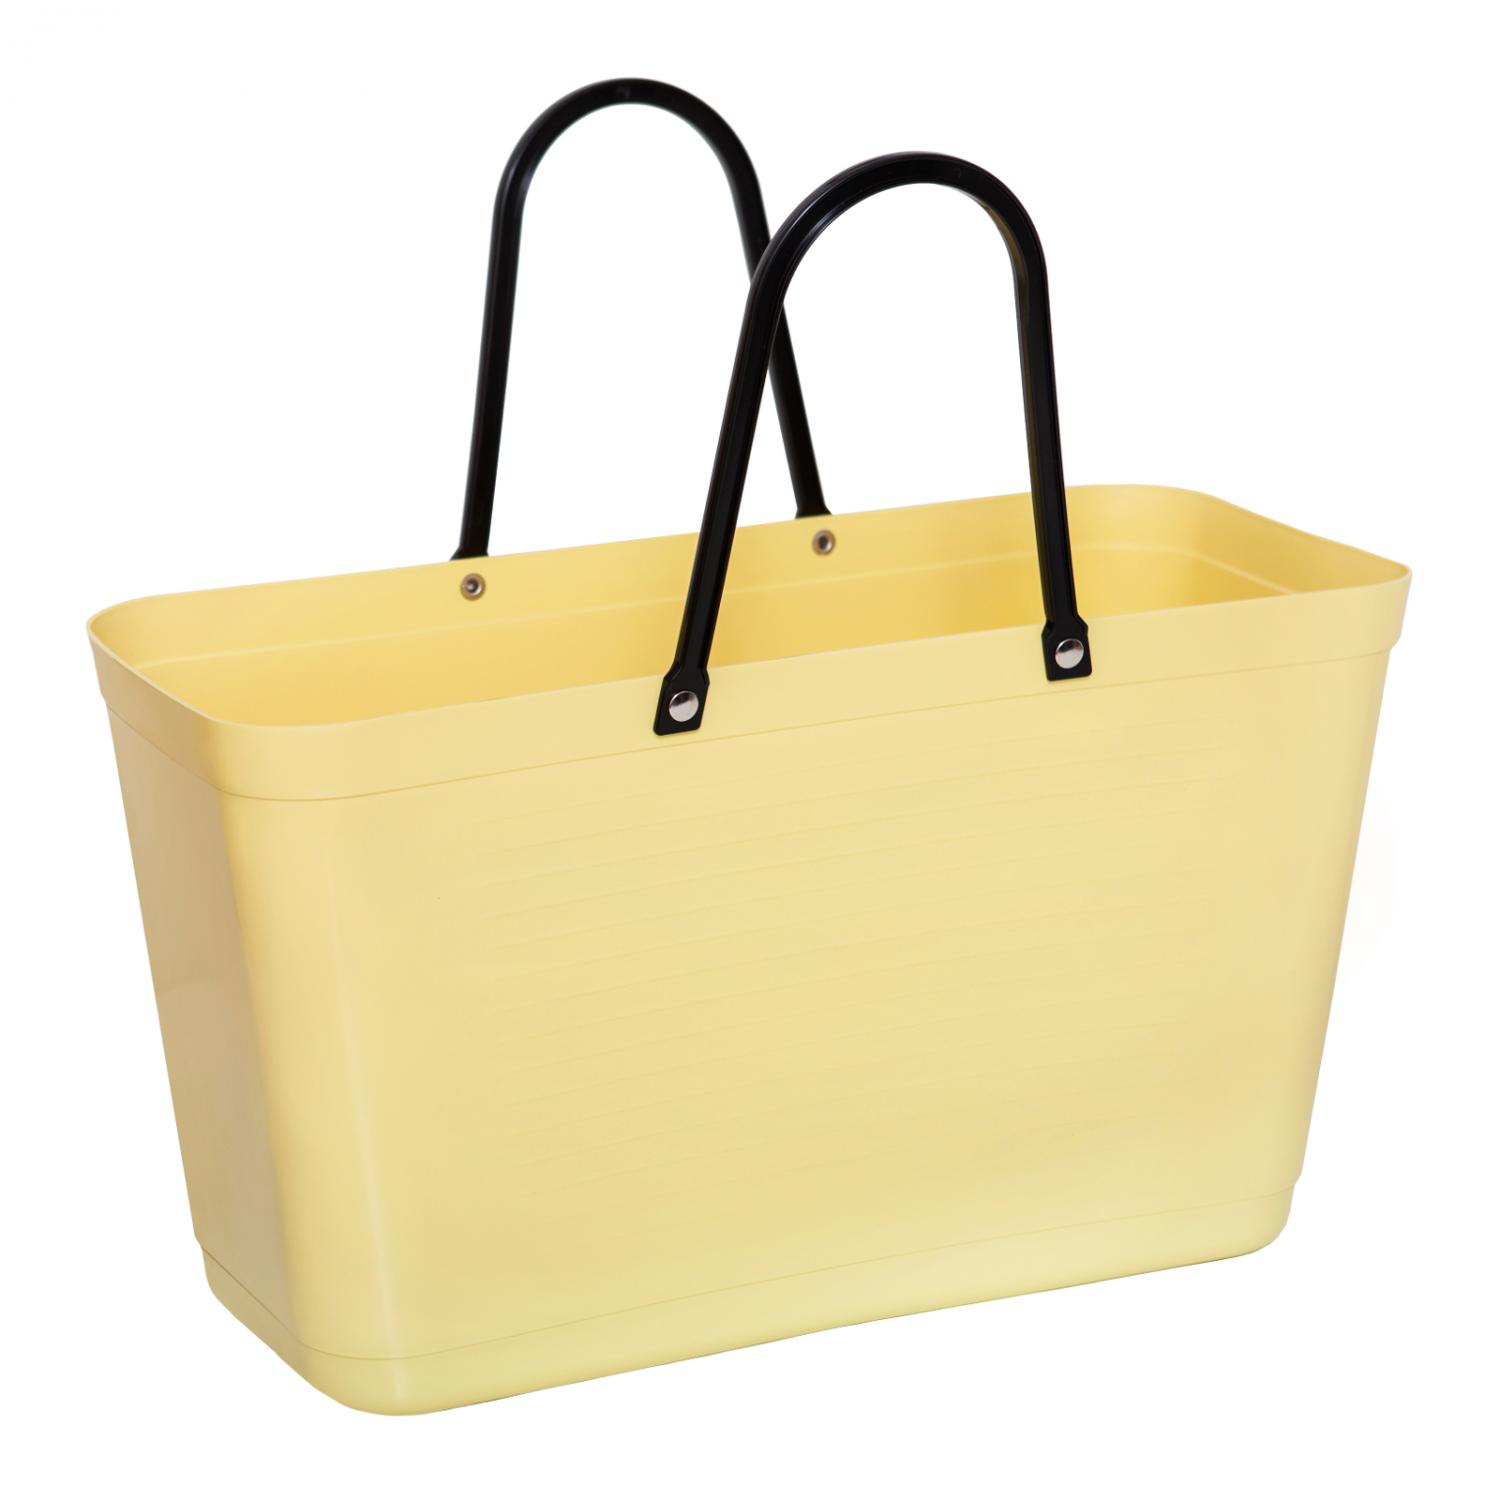 Hinza bag Large Lemon - Green Plastic